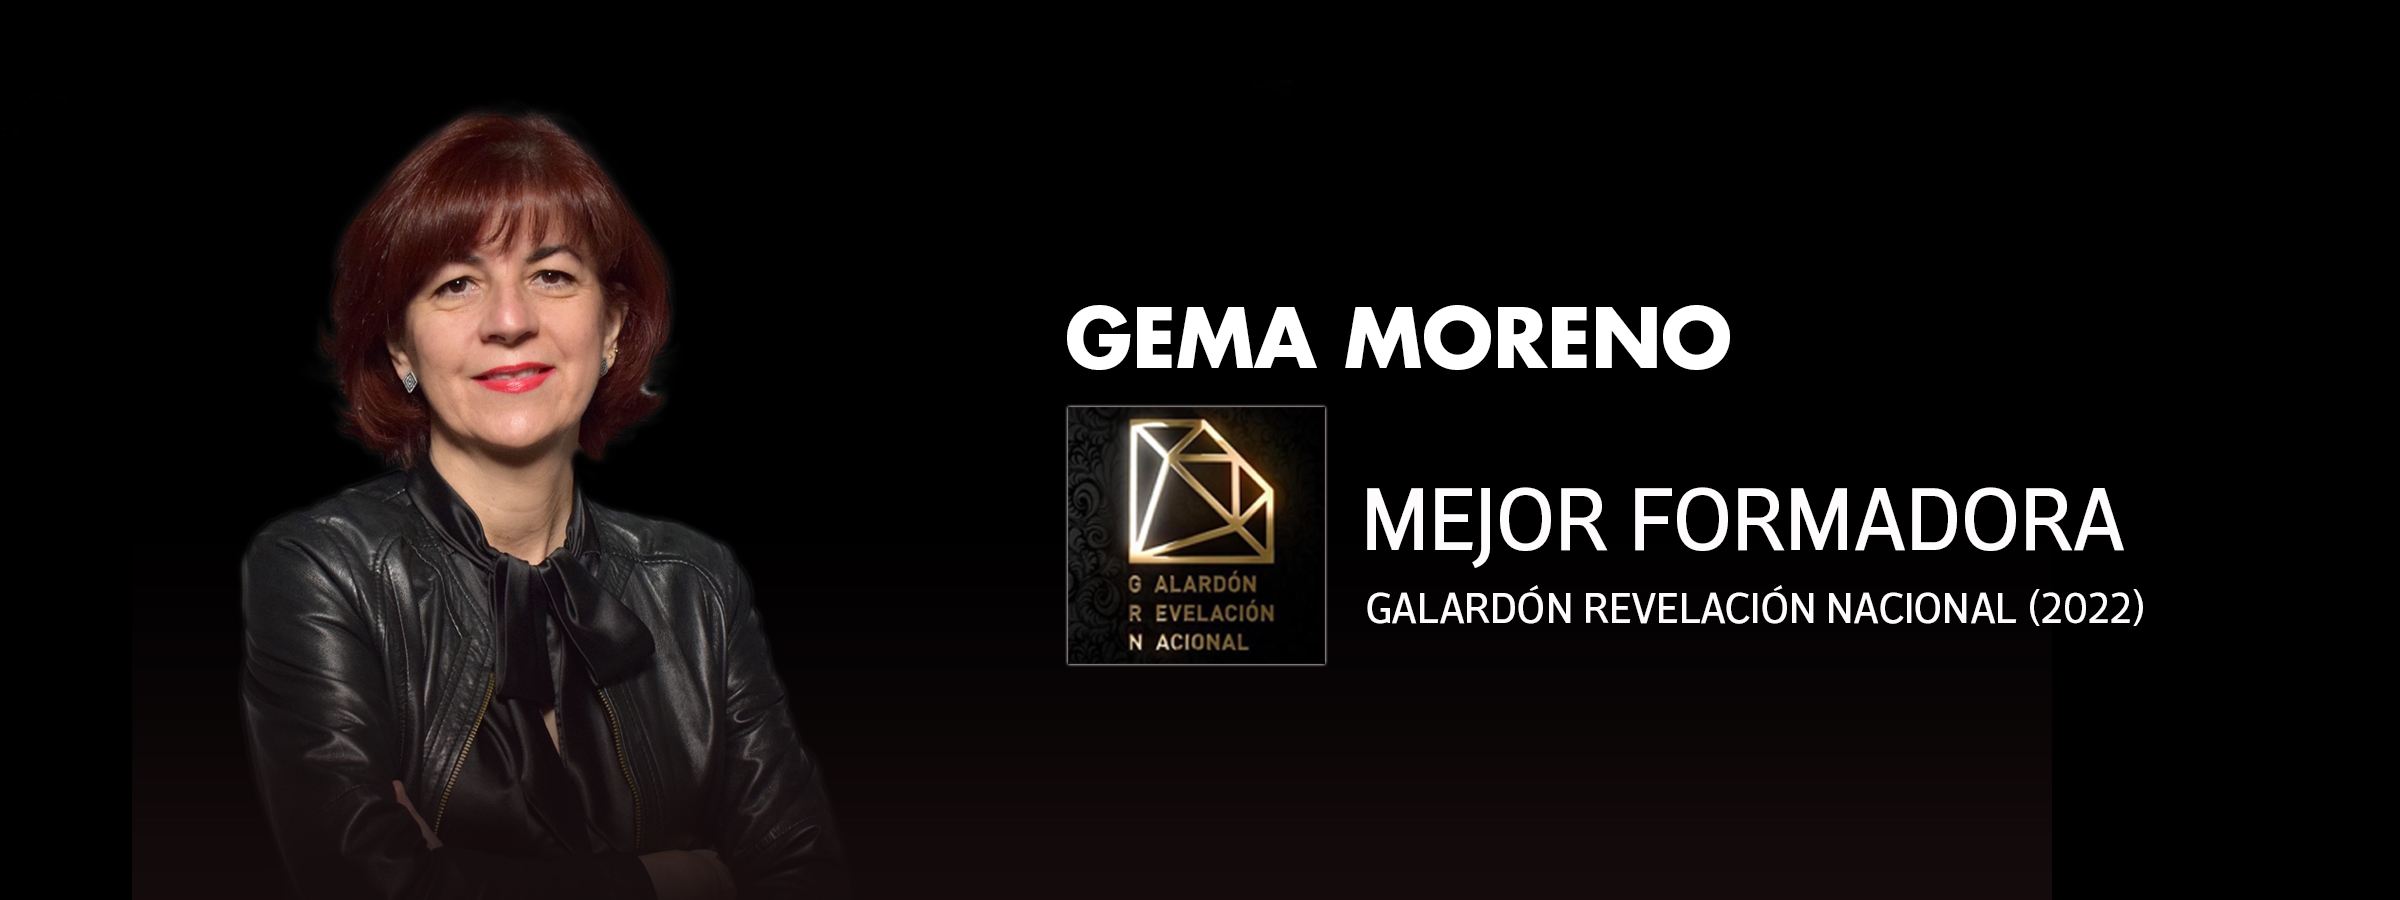 Gema Moreno, la mejor formadora del año